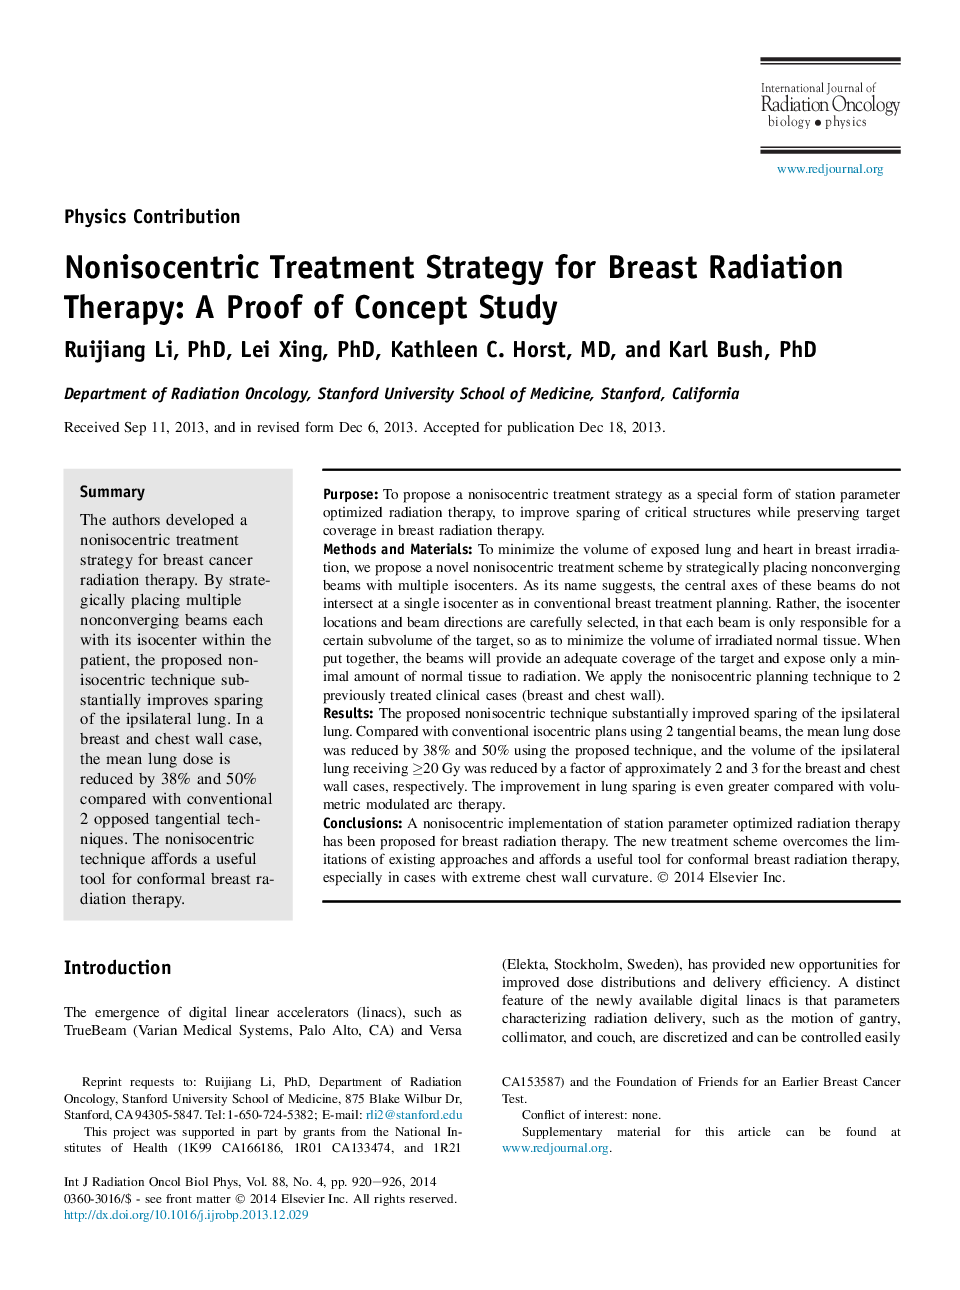 استراتژی درمان غیرحقوقی برای درمان رادیوتراپی پستان: اثبات مفهوم مطالعه 